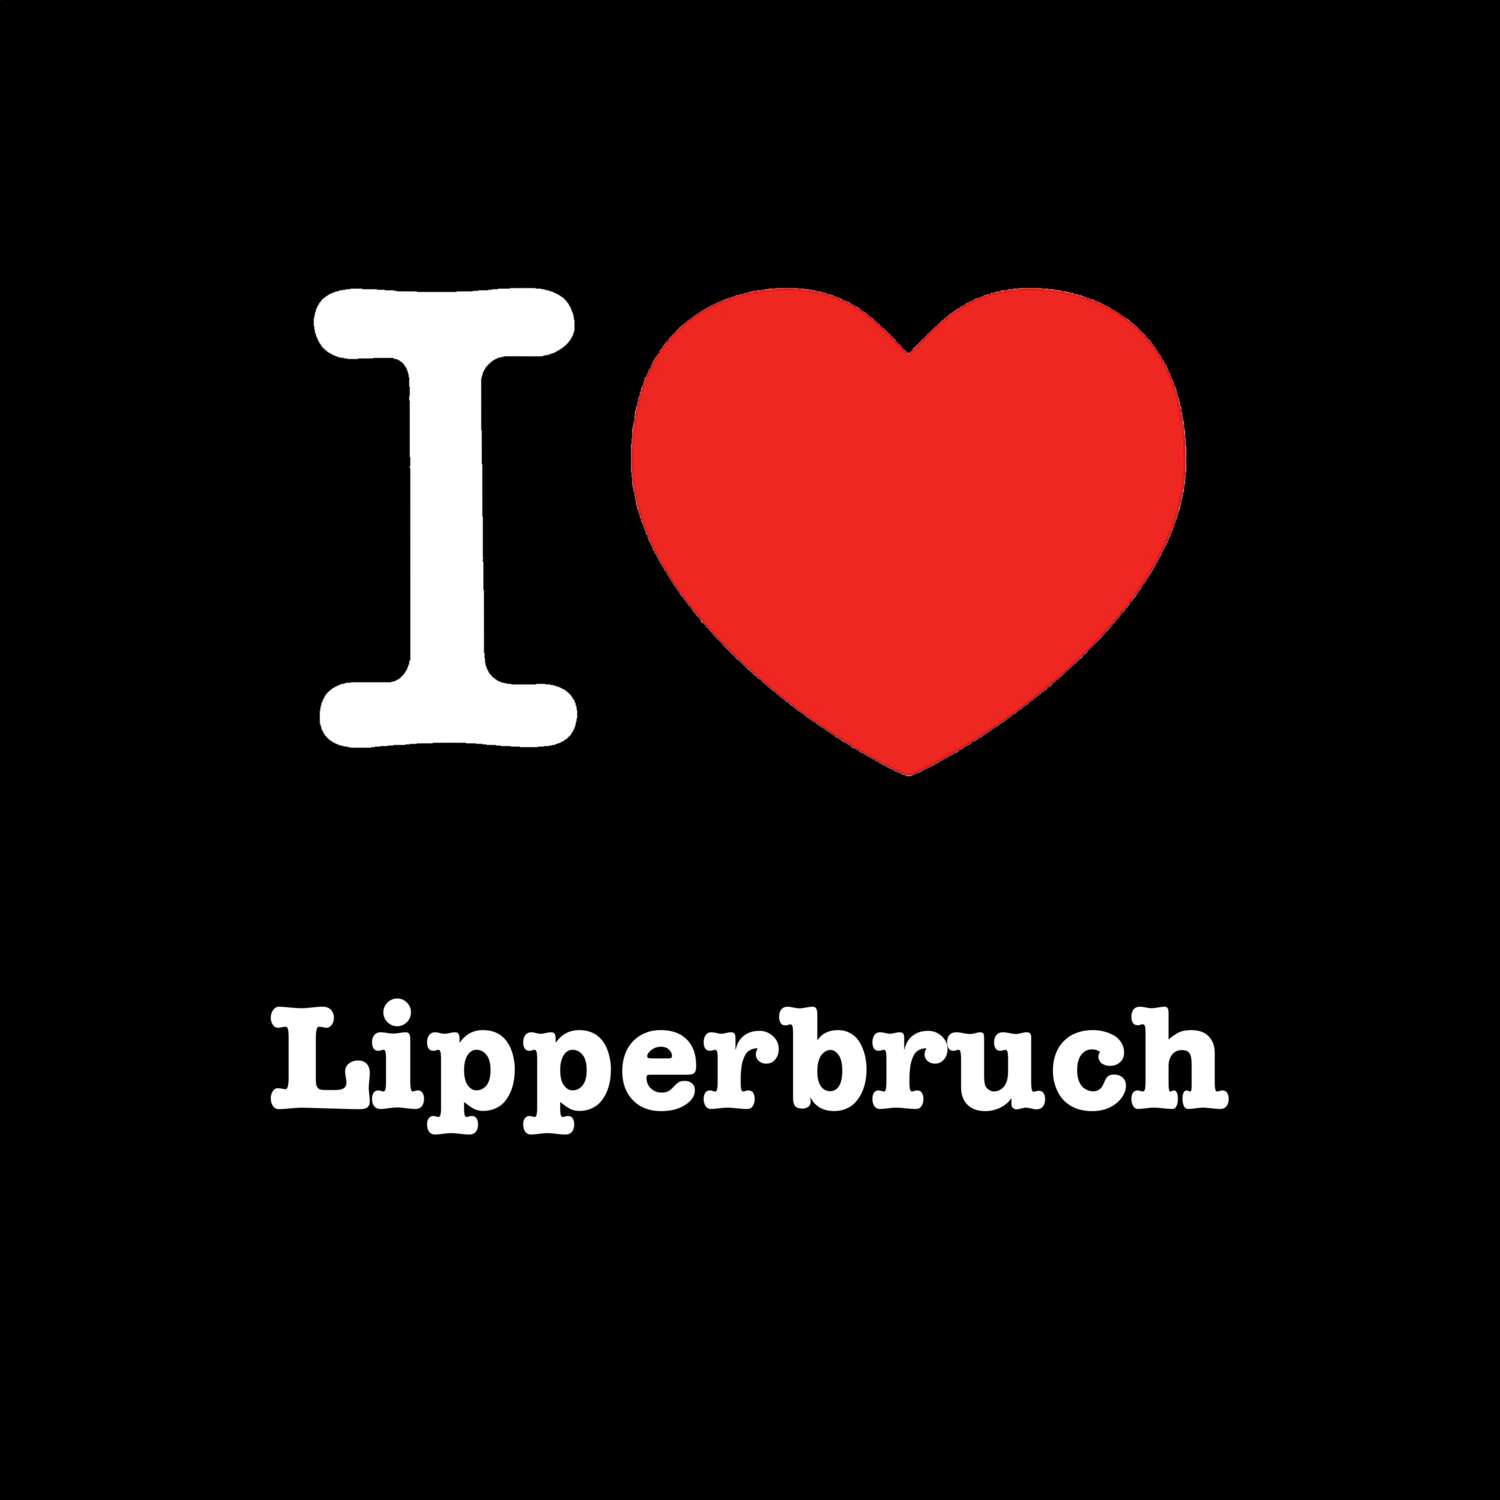 Lipperbruch T-Shirt »I love«